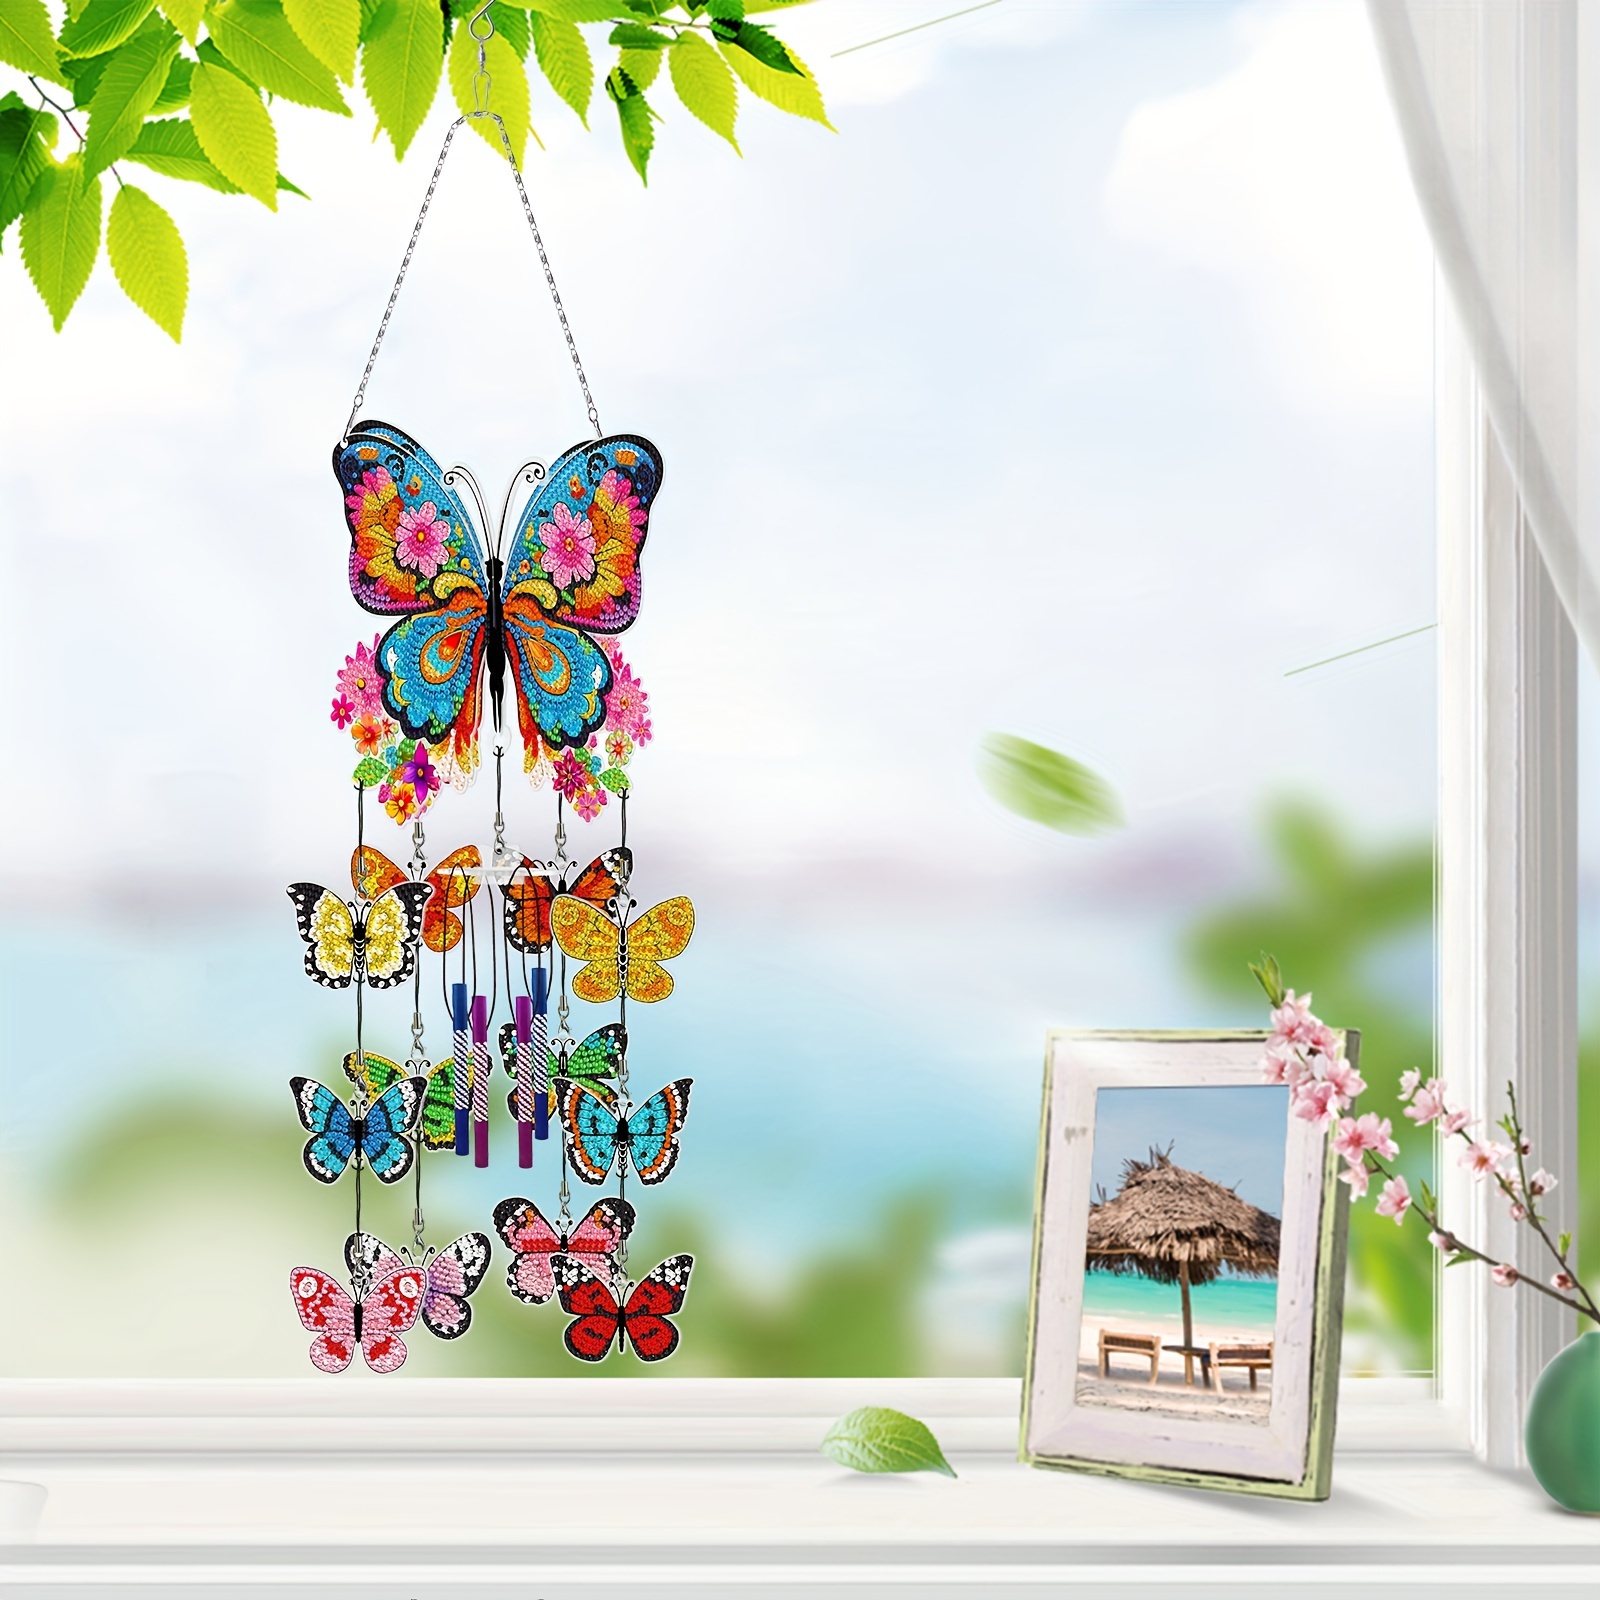 

Kit de Carillon à Vent de Peinture de Diamant DIY - Design Coloré de Papillon & Floral, Décoration Suspendue en PVC 3D Artisanale pour la Maison, le Jardin et la Fenêtre.